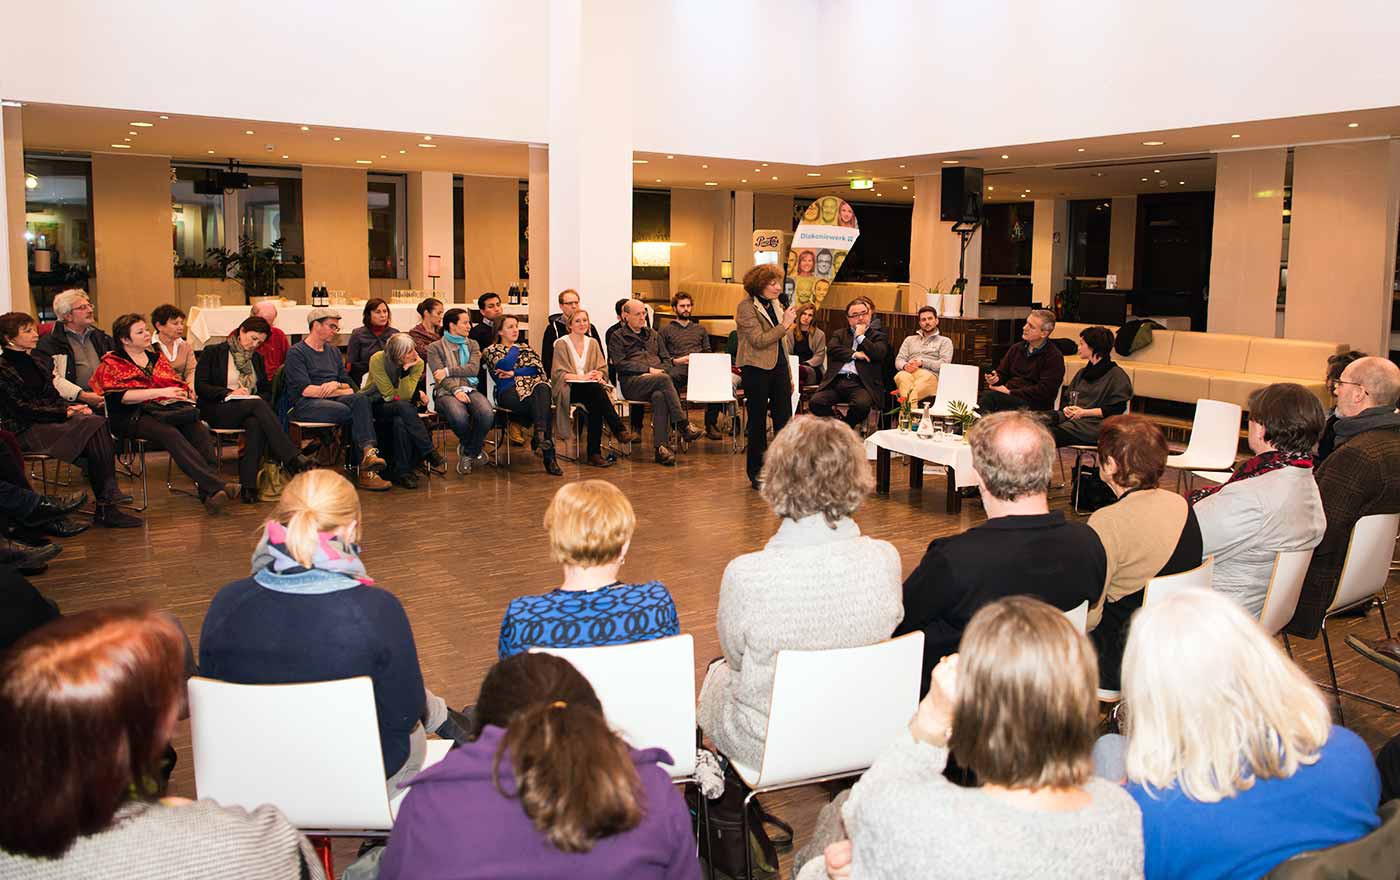 Knapp 100 Personen diskutierten dazu am 24. Jänner im Albert Schweitzer Haus in Wien. Viele Besucherinnen und Besucher schilderten ihre persönliche Erfahrung und Begegnung mit Flüchtlingen.